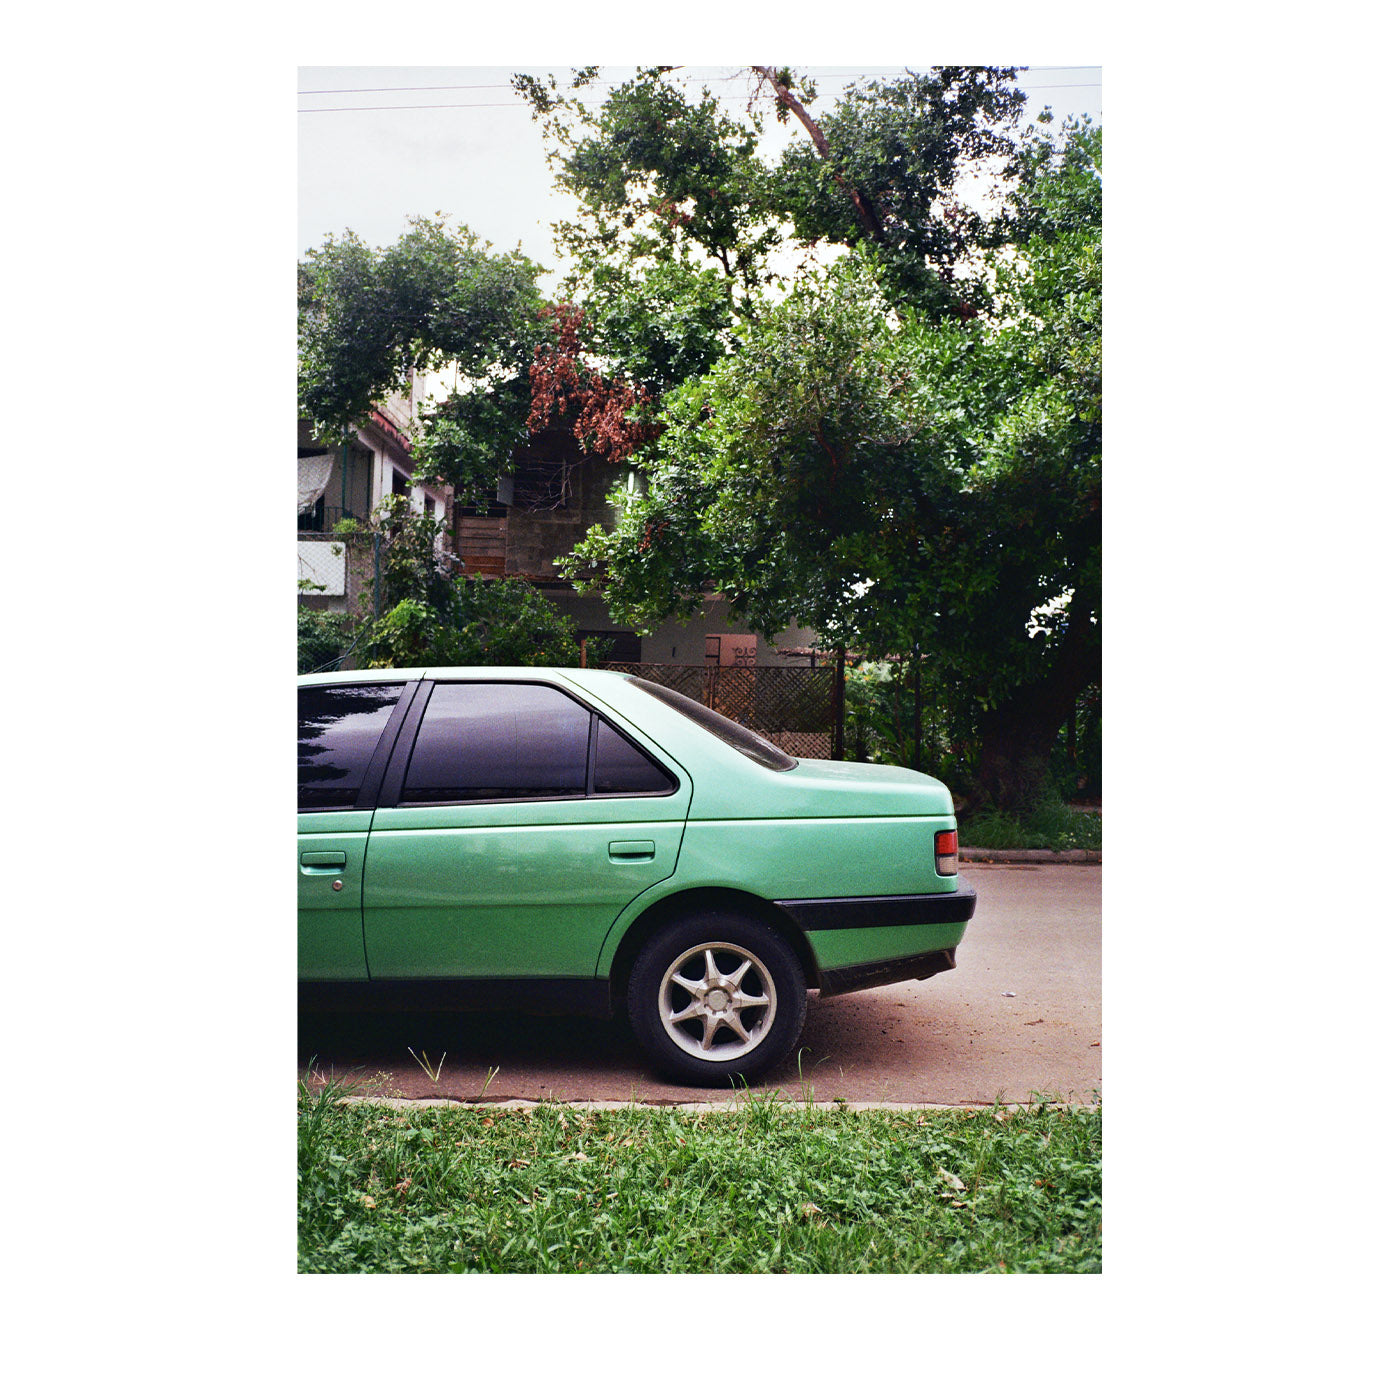 Stampa fotografica Auto Verde - Vista principale